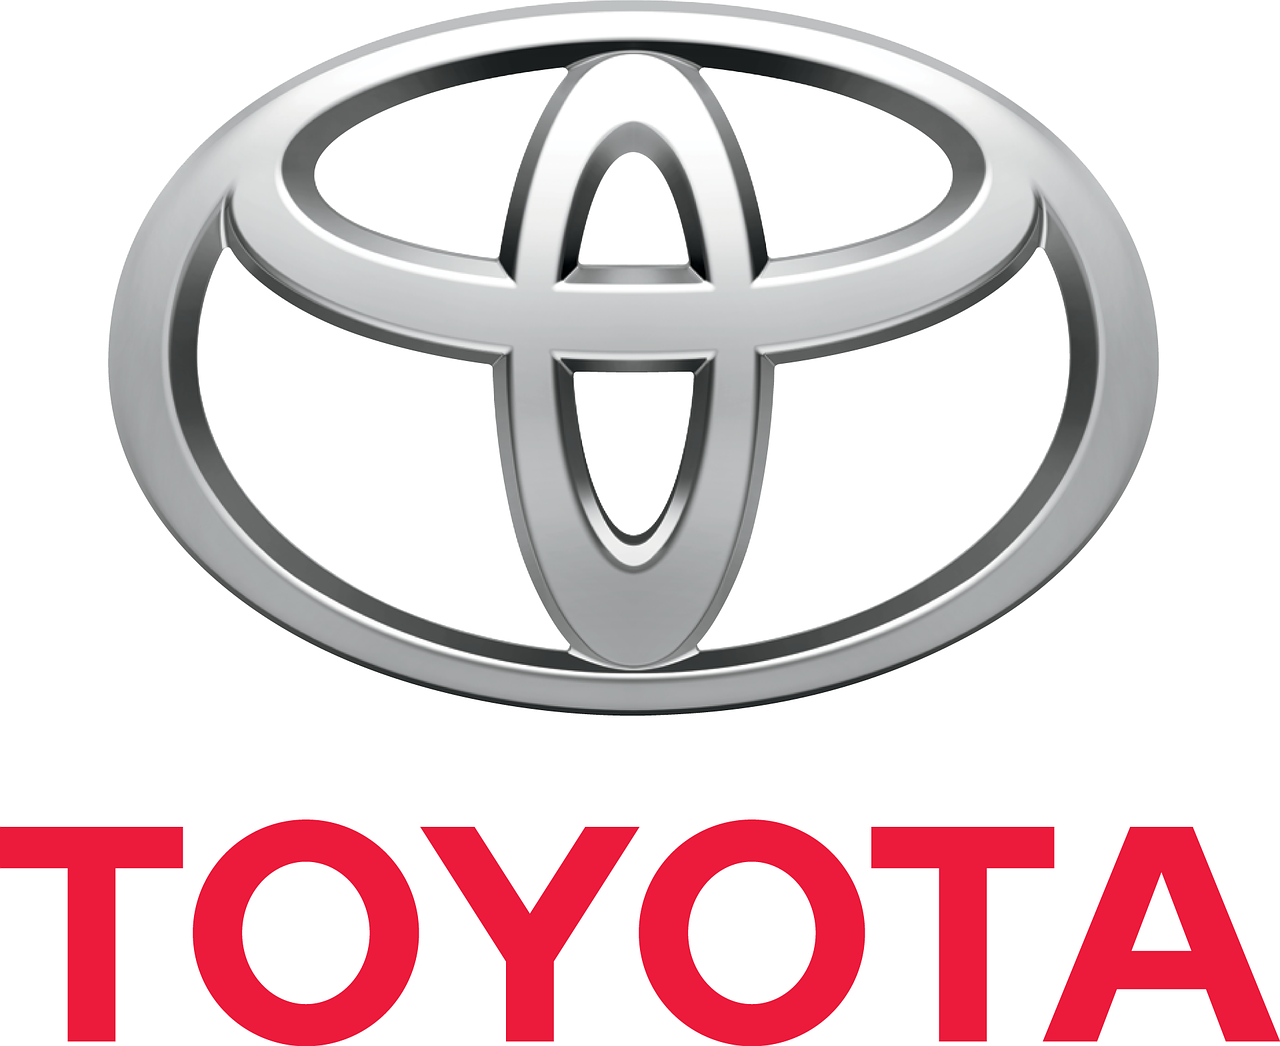 Toyota: collaborazione in corso tra la marca automobilistica e Uber